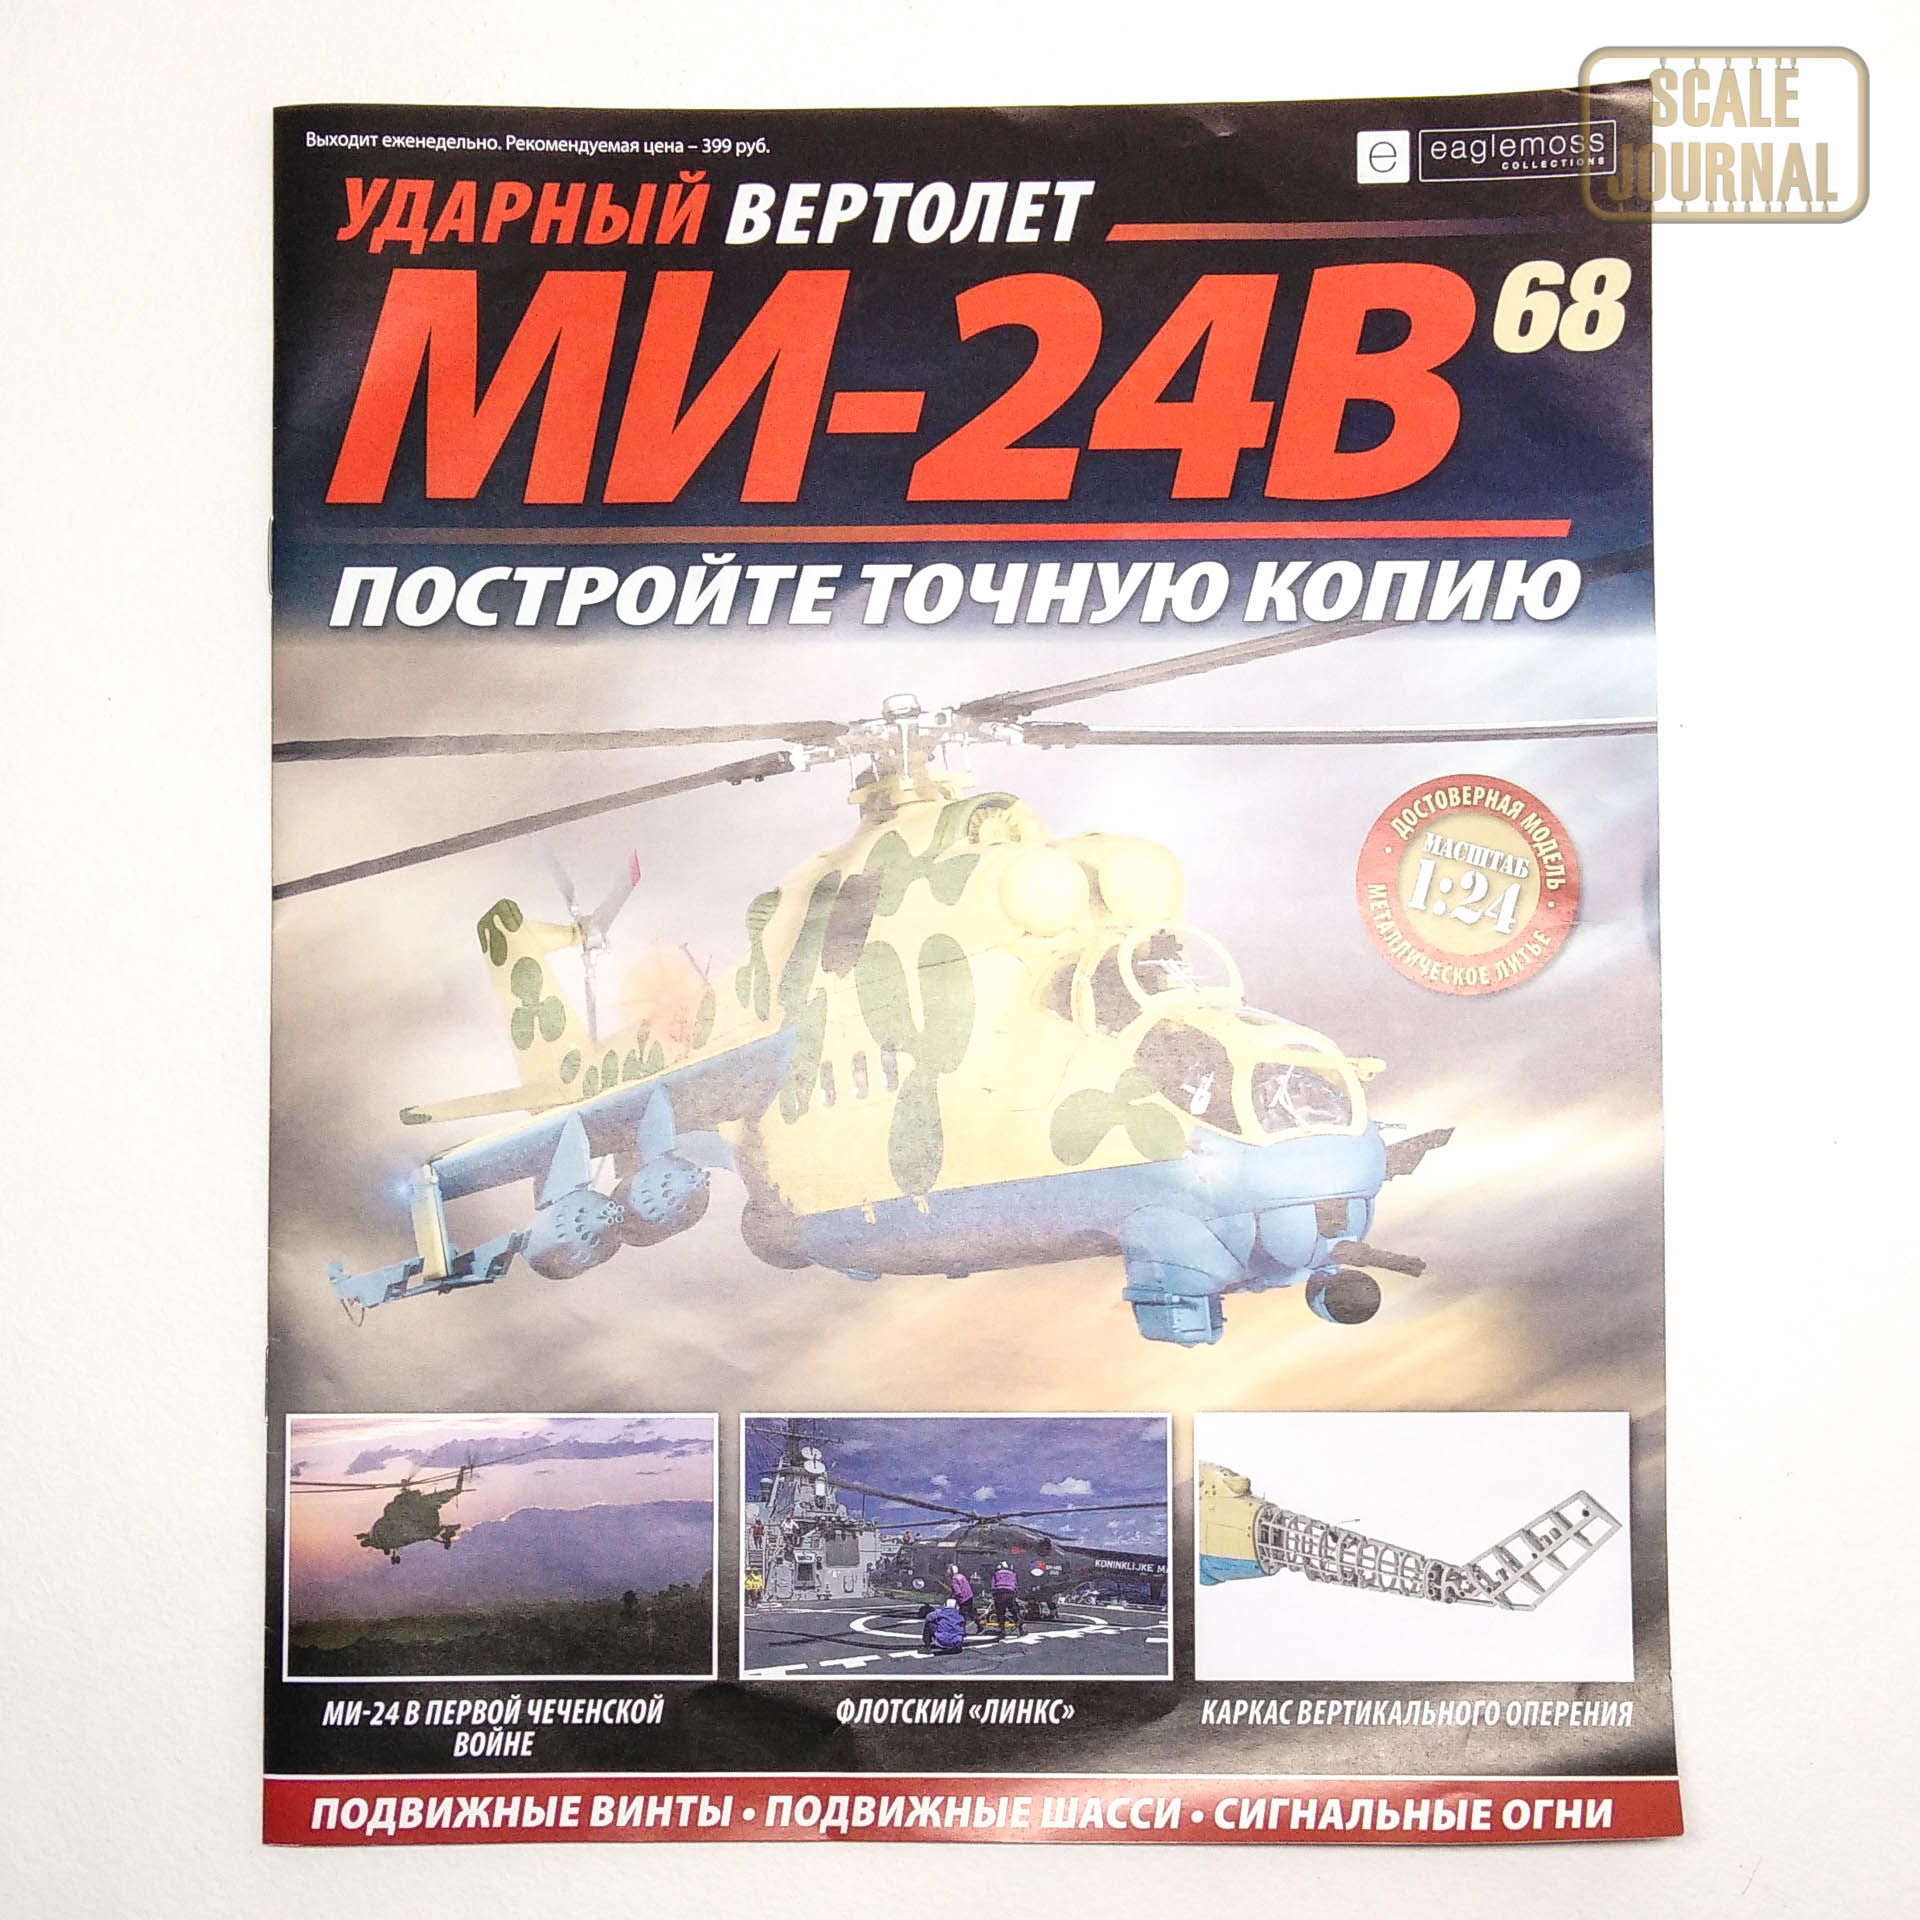 Ударный вертолет Ми-24В от Eaglemoss в масштабе 1/24